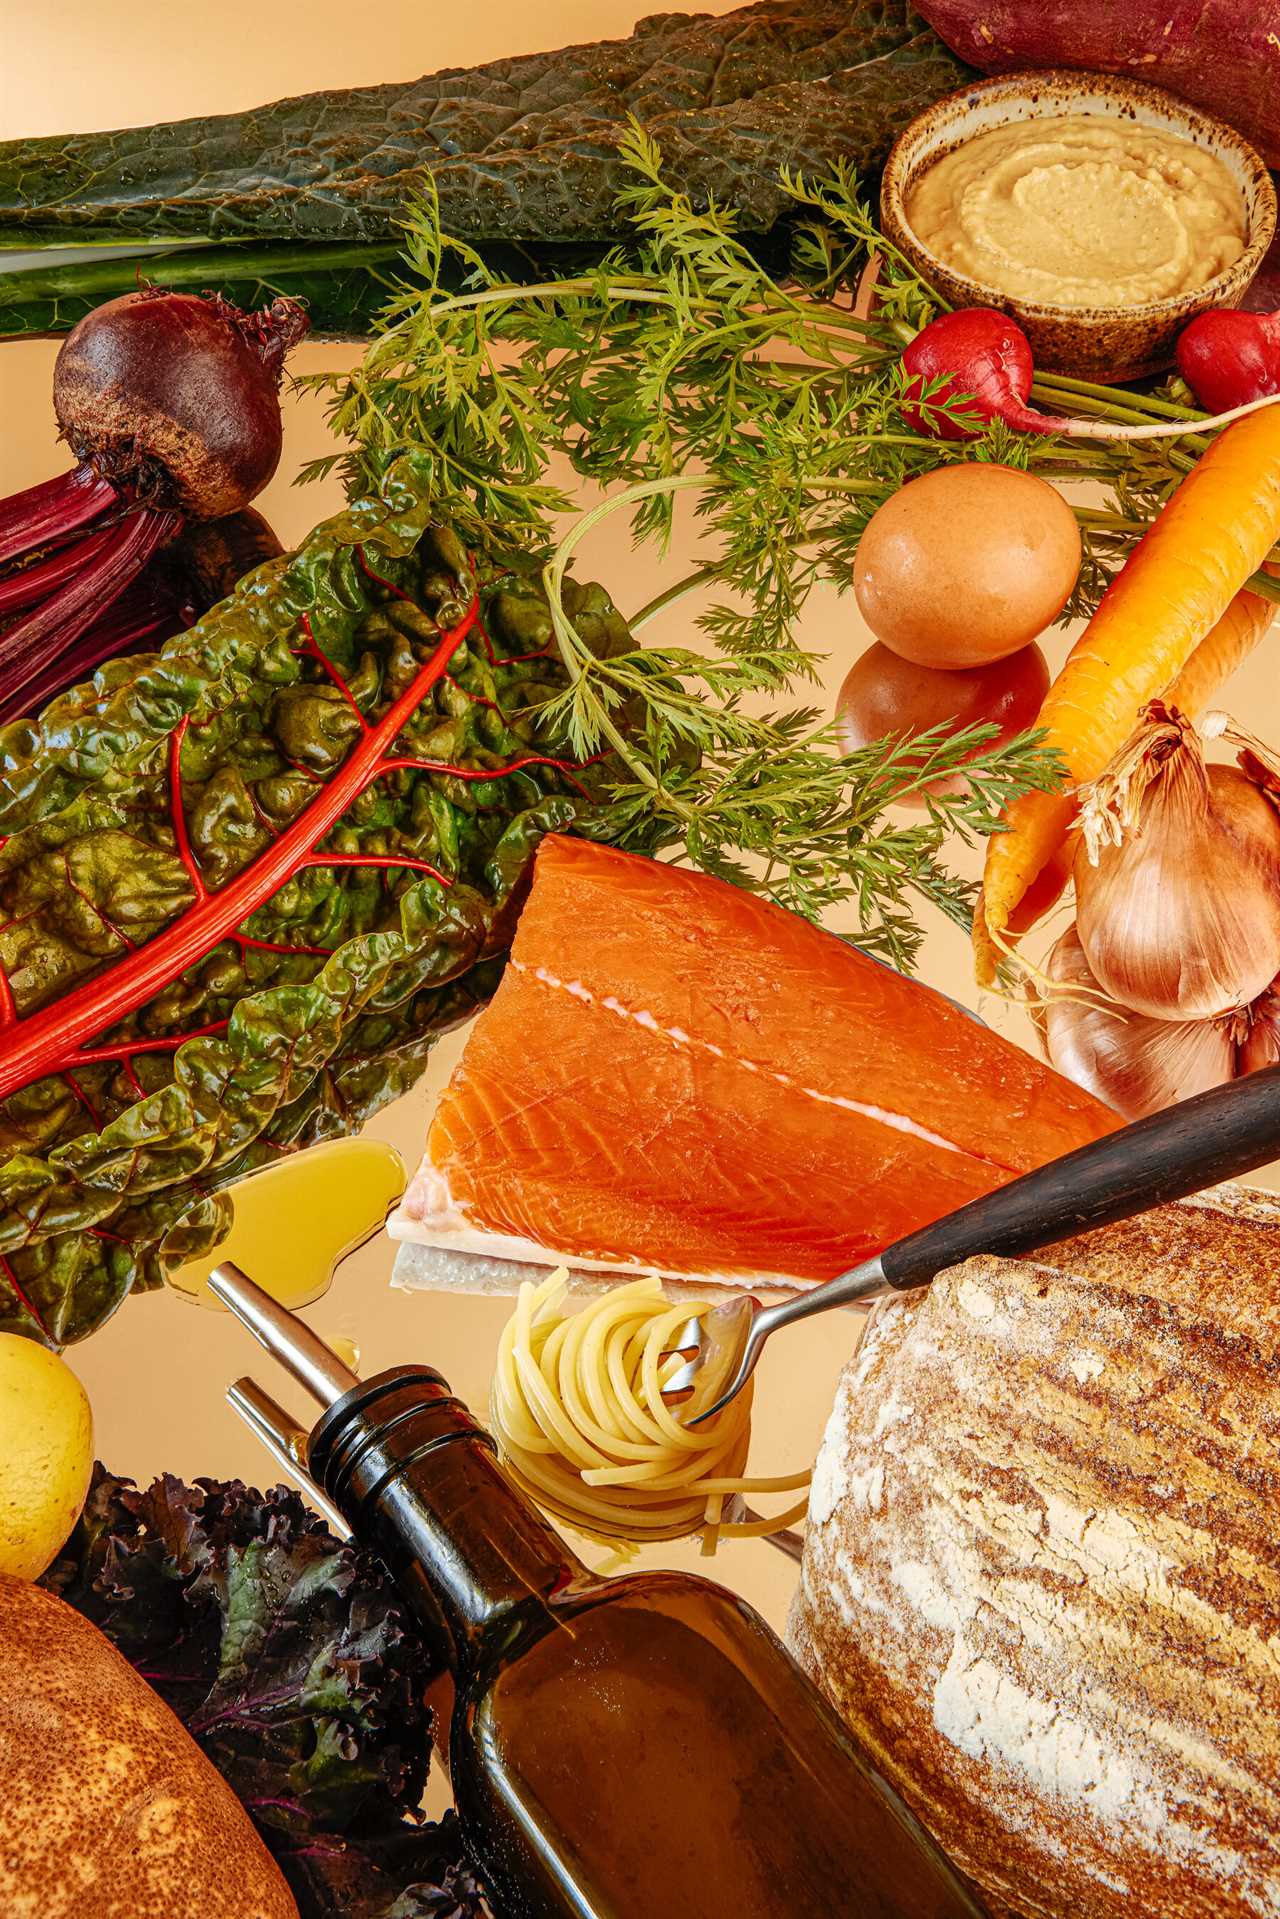 Healthier Together: The Mediterranean Diet  | FOX 13 Seattle